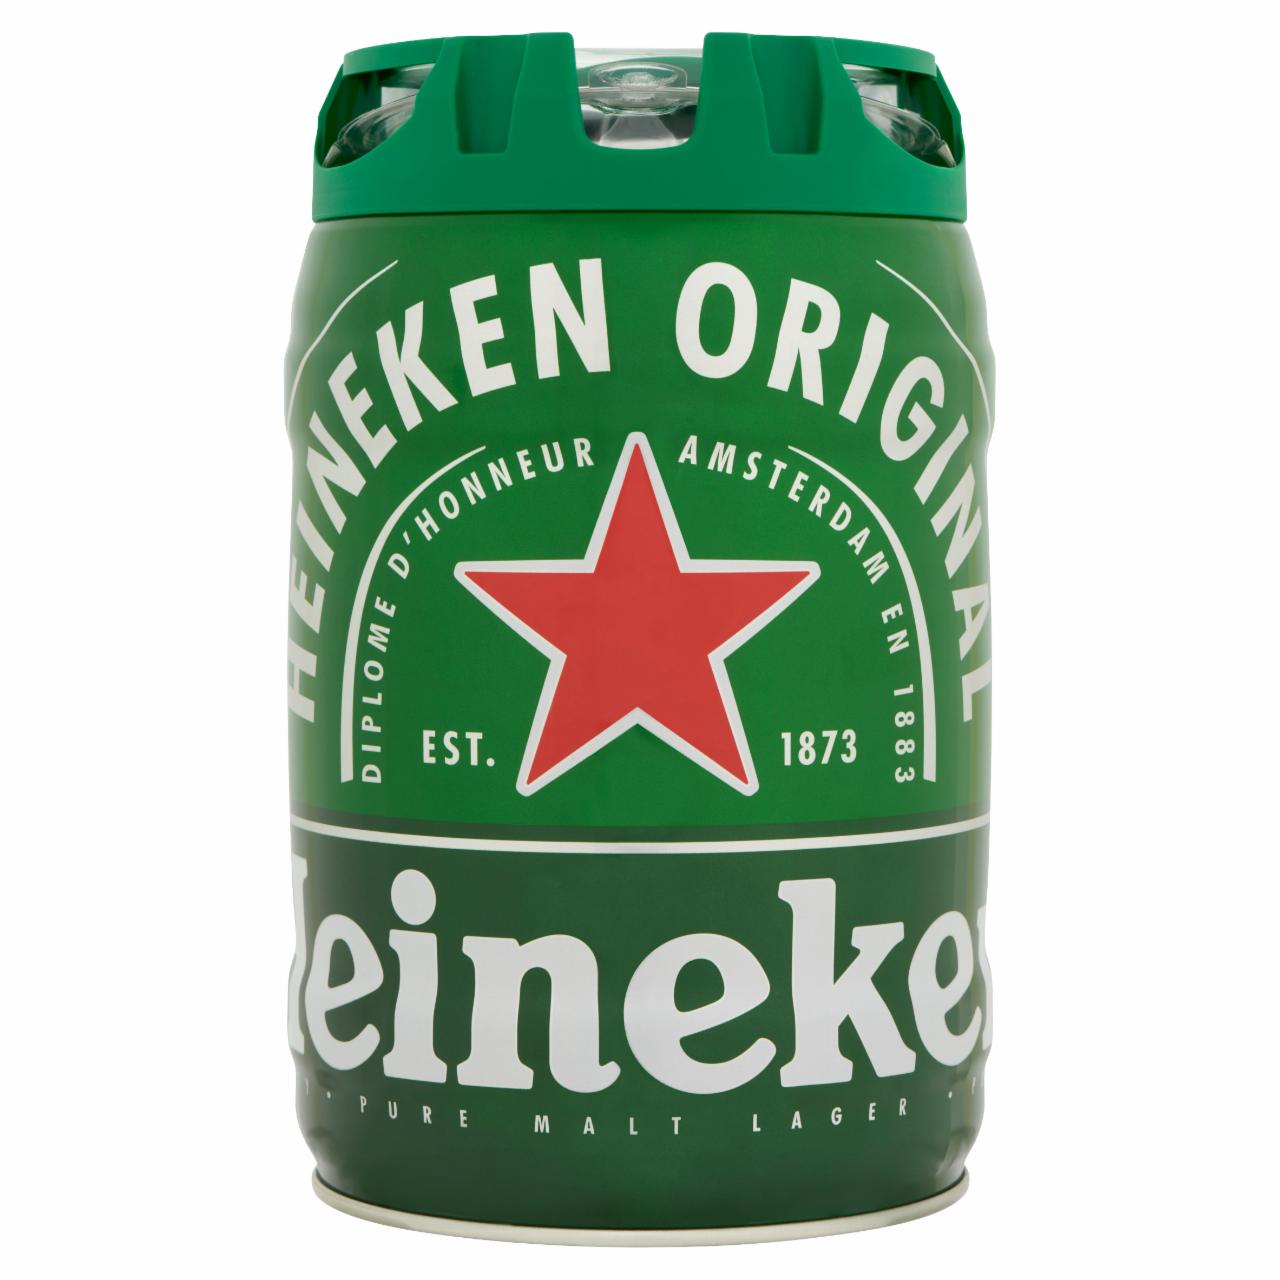 Képek - Heineken minőségi világos sör 5% 5 l hordó